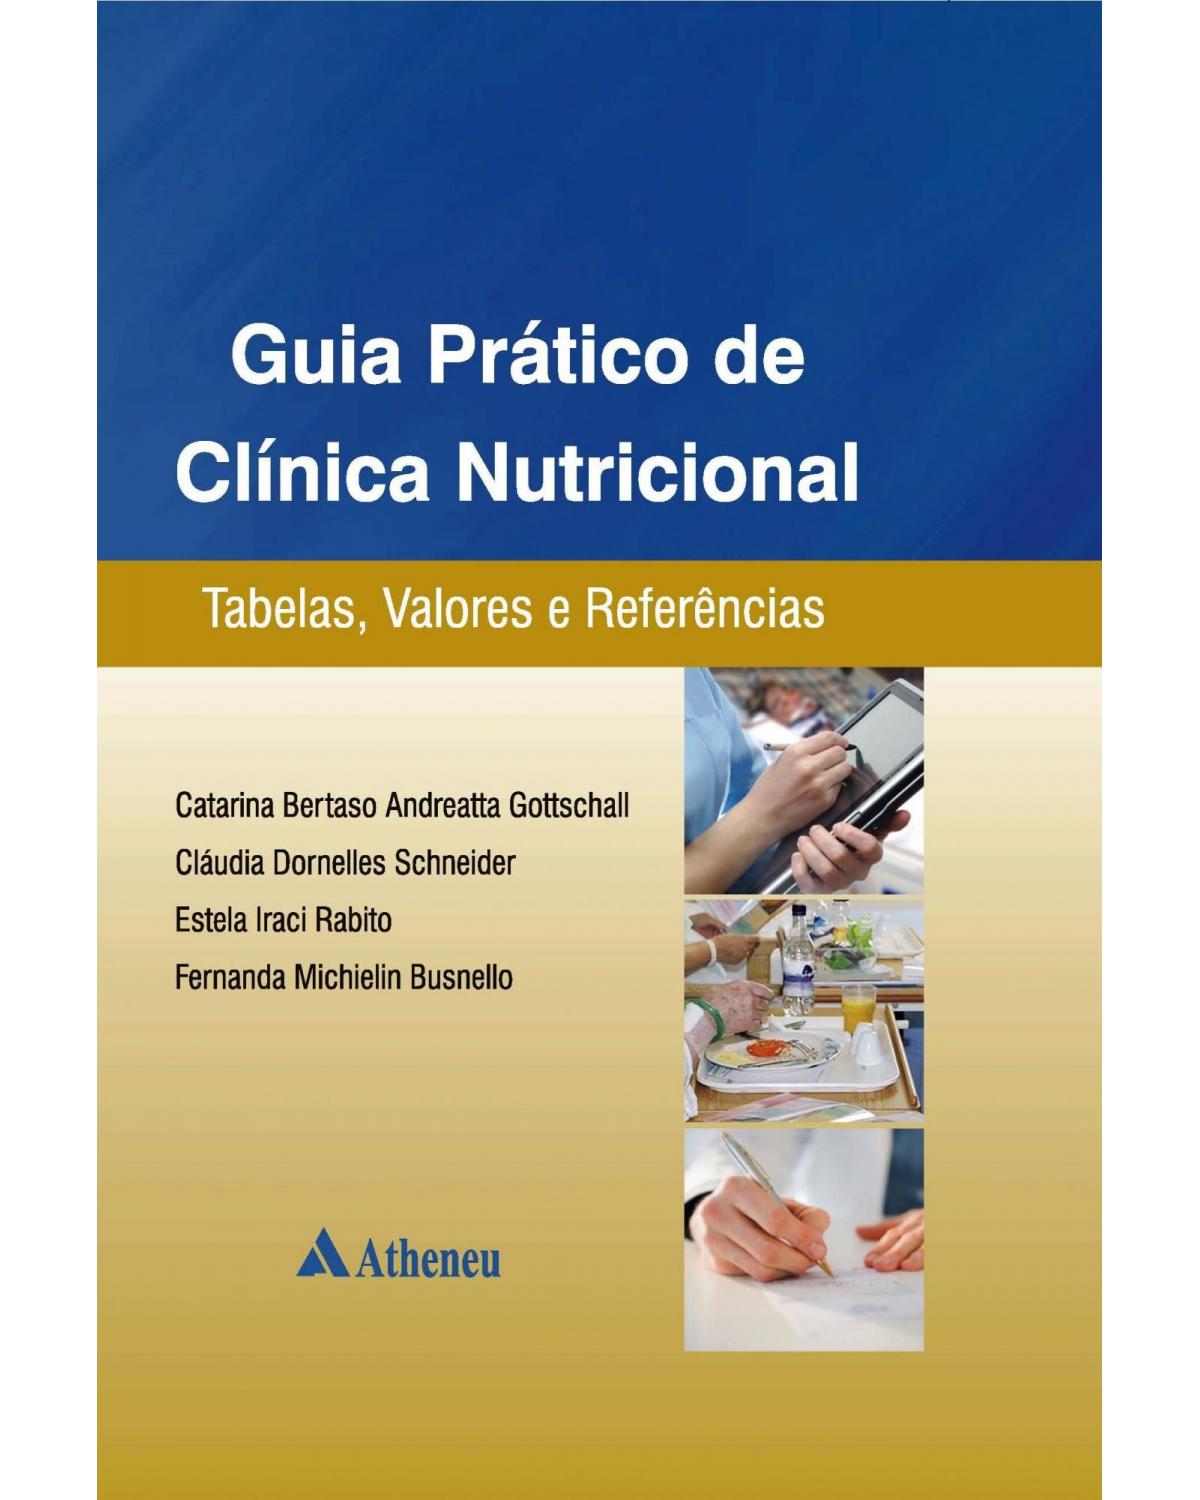 Guia prático de clínica nutricional - tabelas, valores e referências - 1ª Edição | 2012